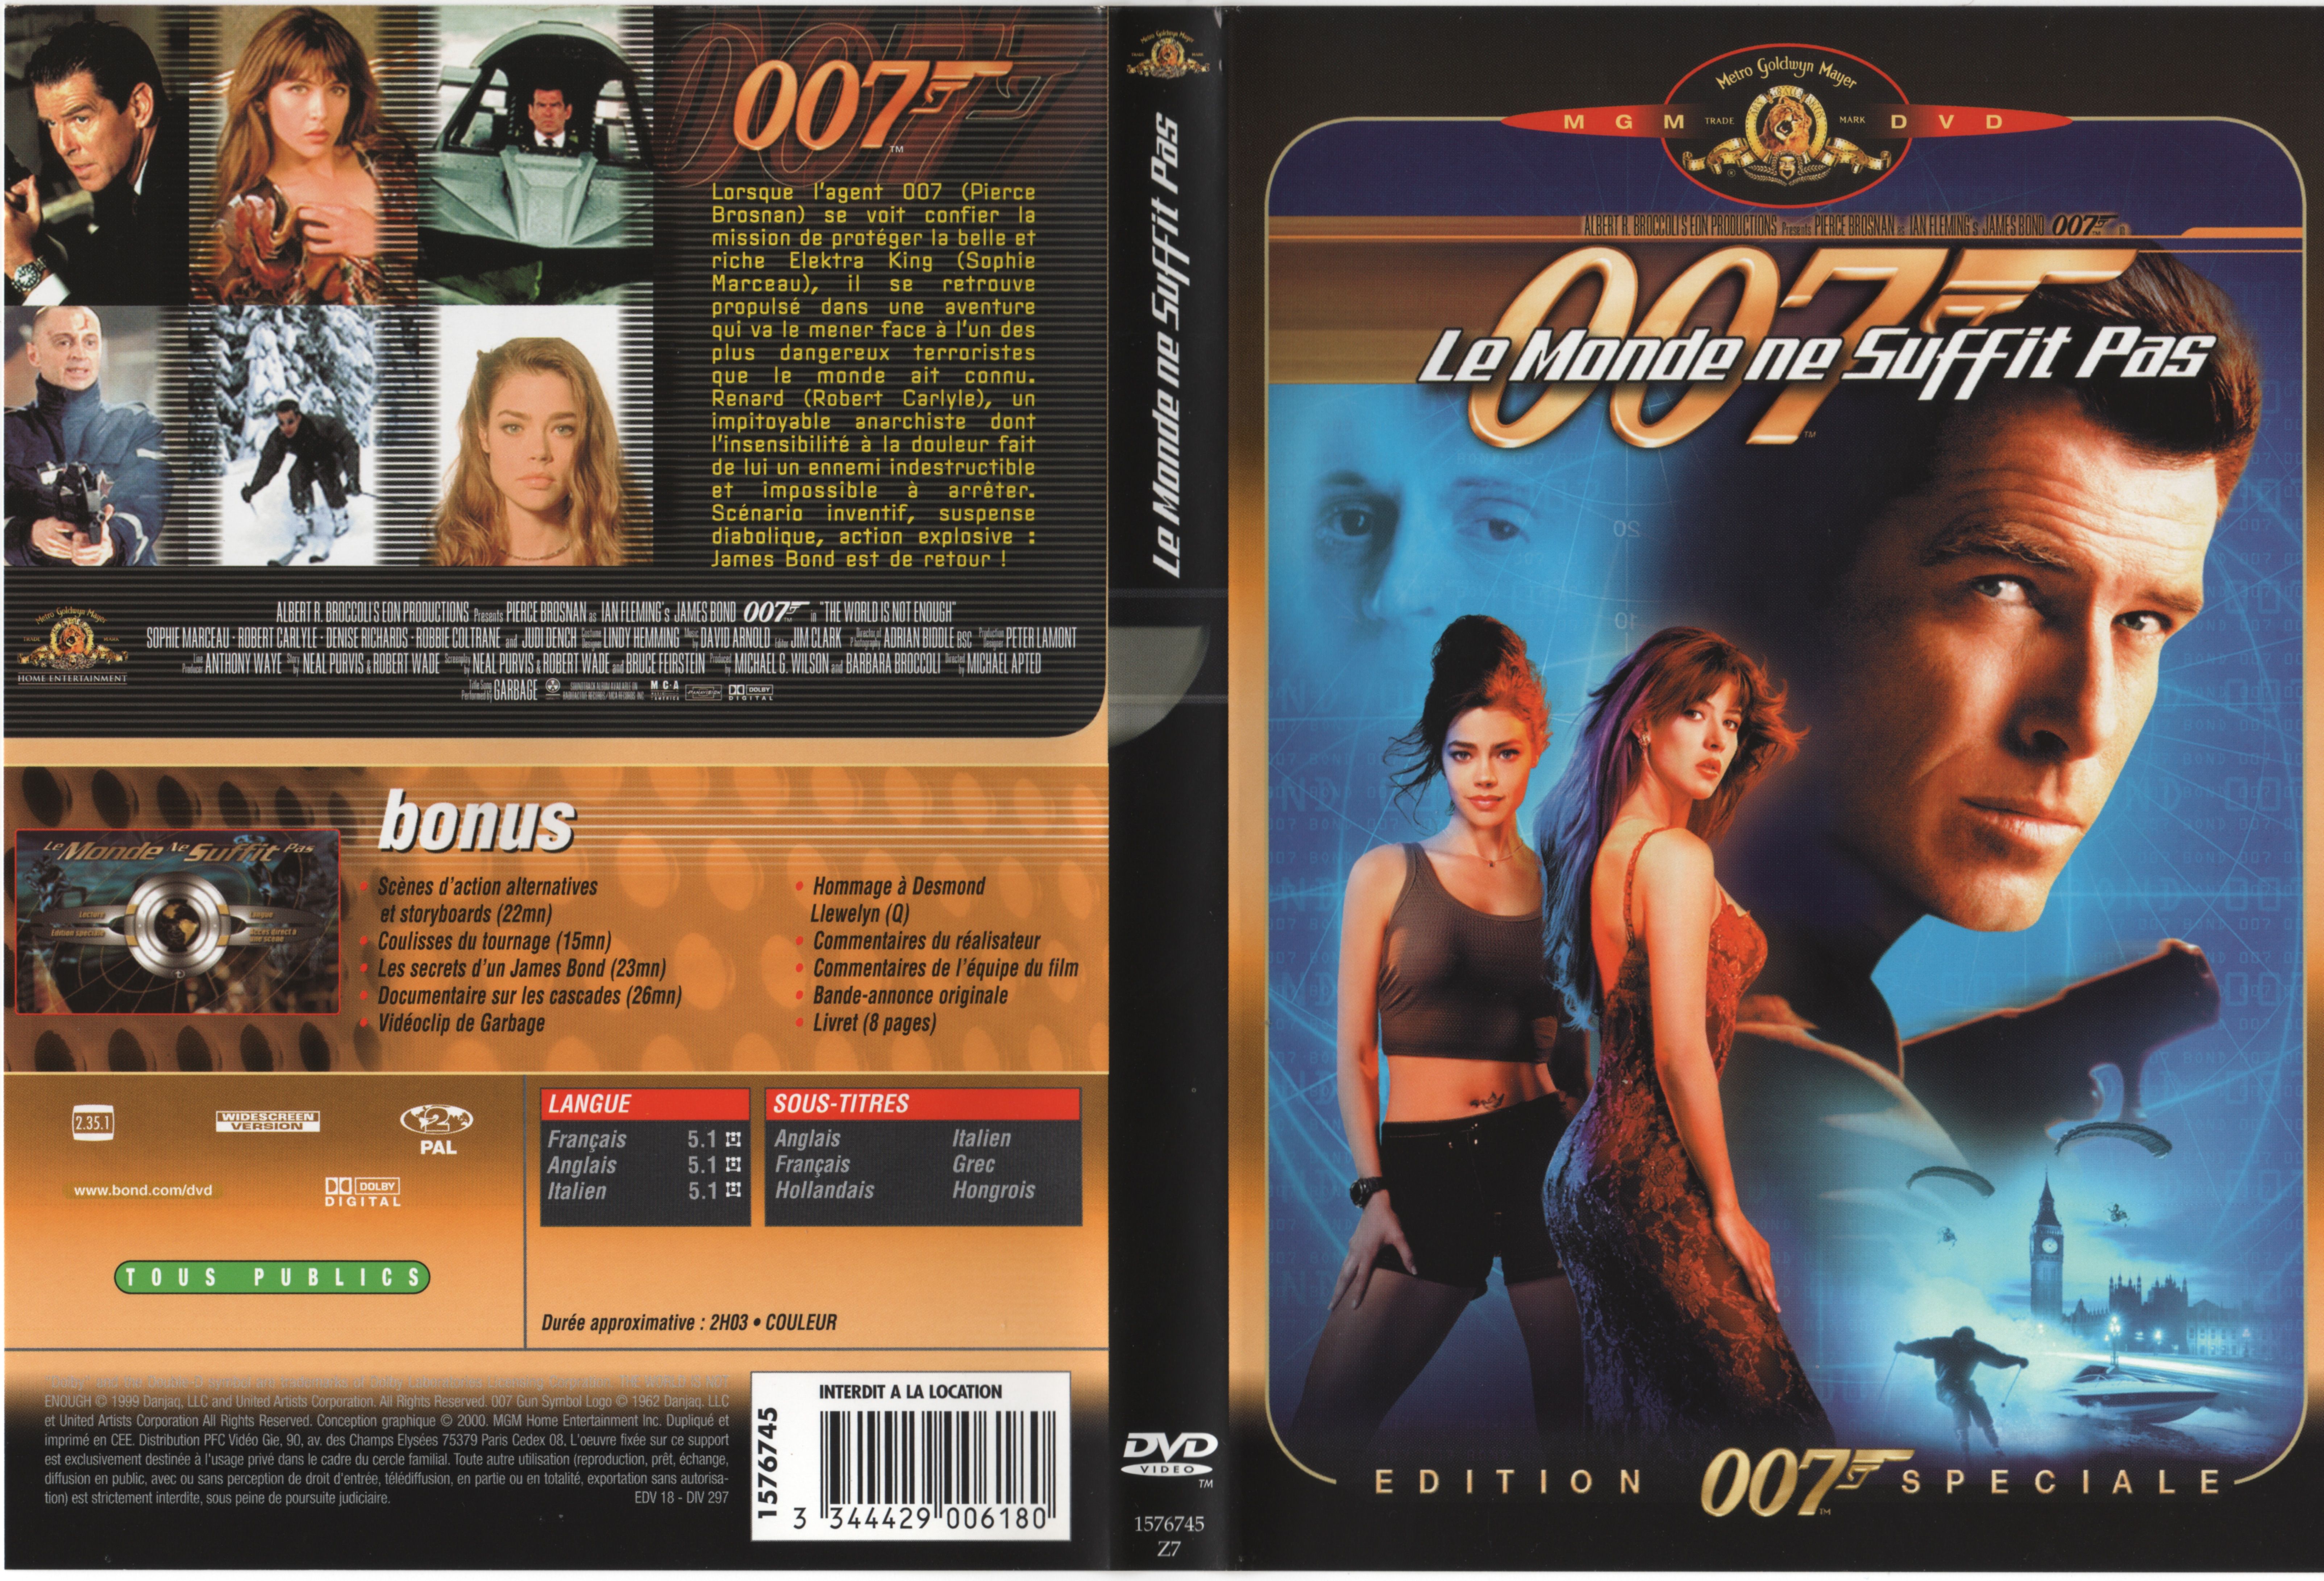 Jaquette DVD James bond 007 Le monde ne suffit pas